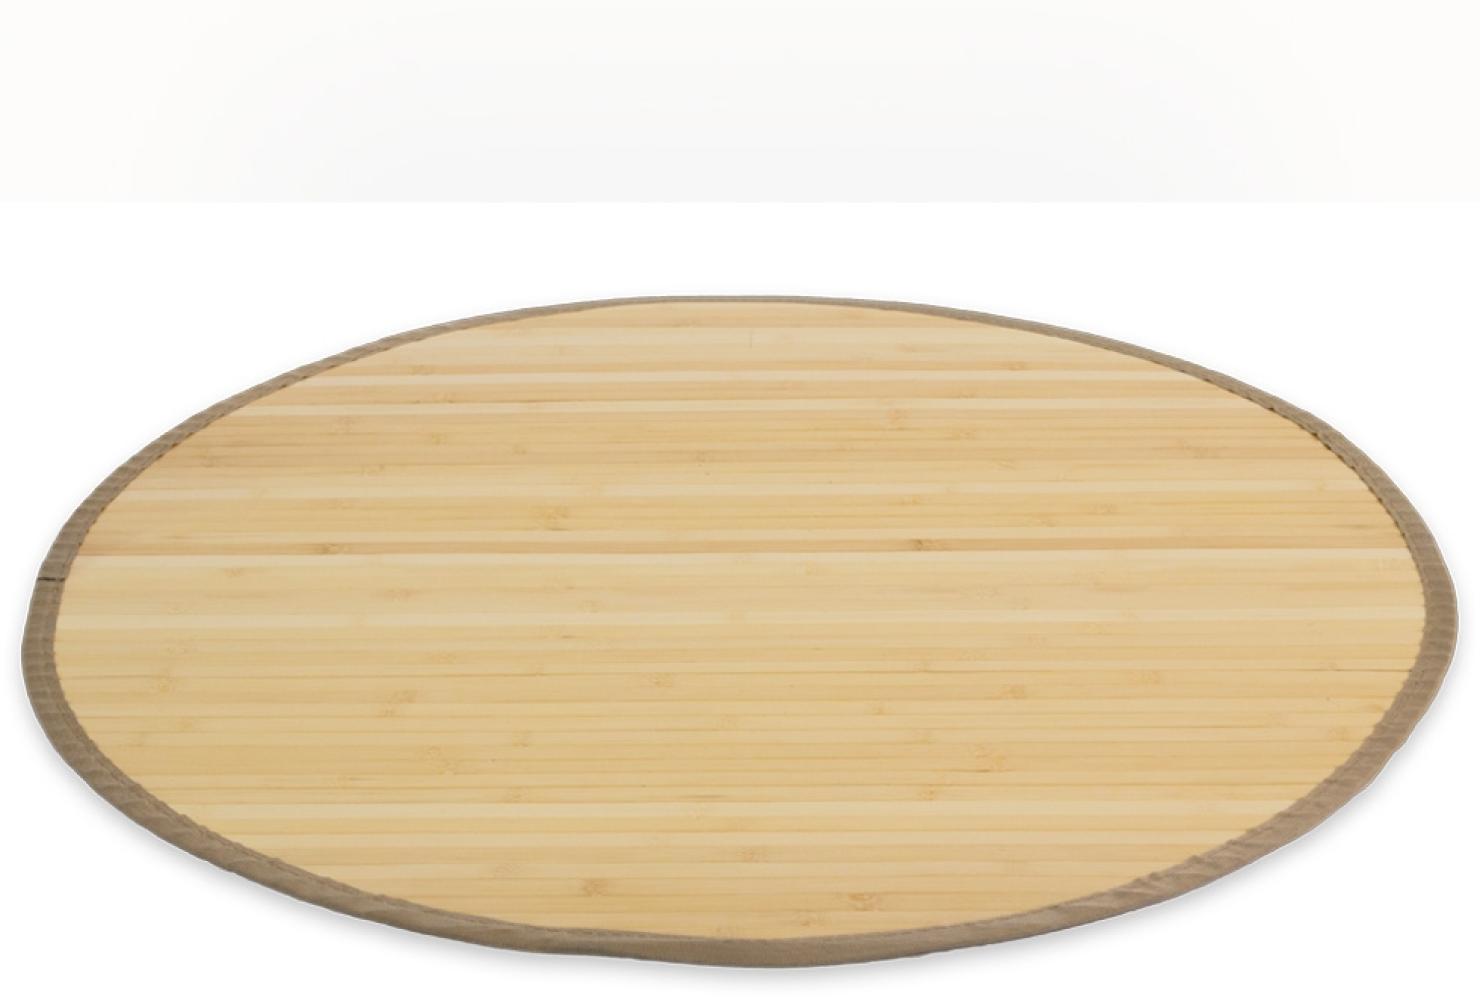 Homestyle4u Teppich, rund, Bambus natur, Ø 150 cm Bild 1